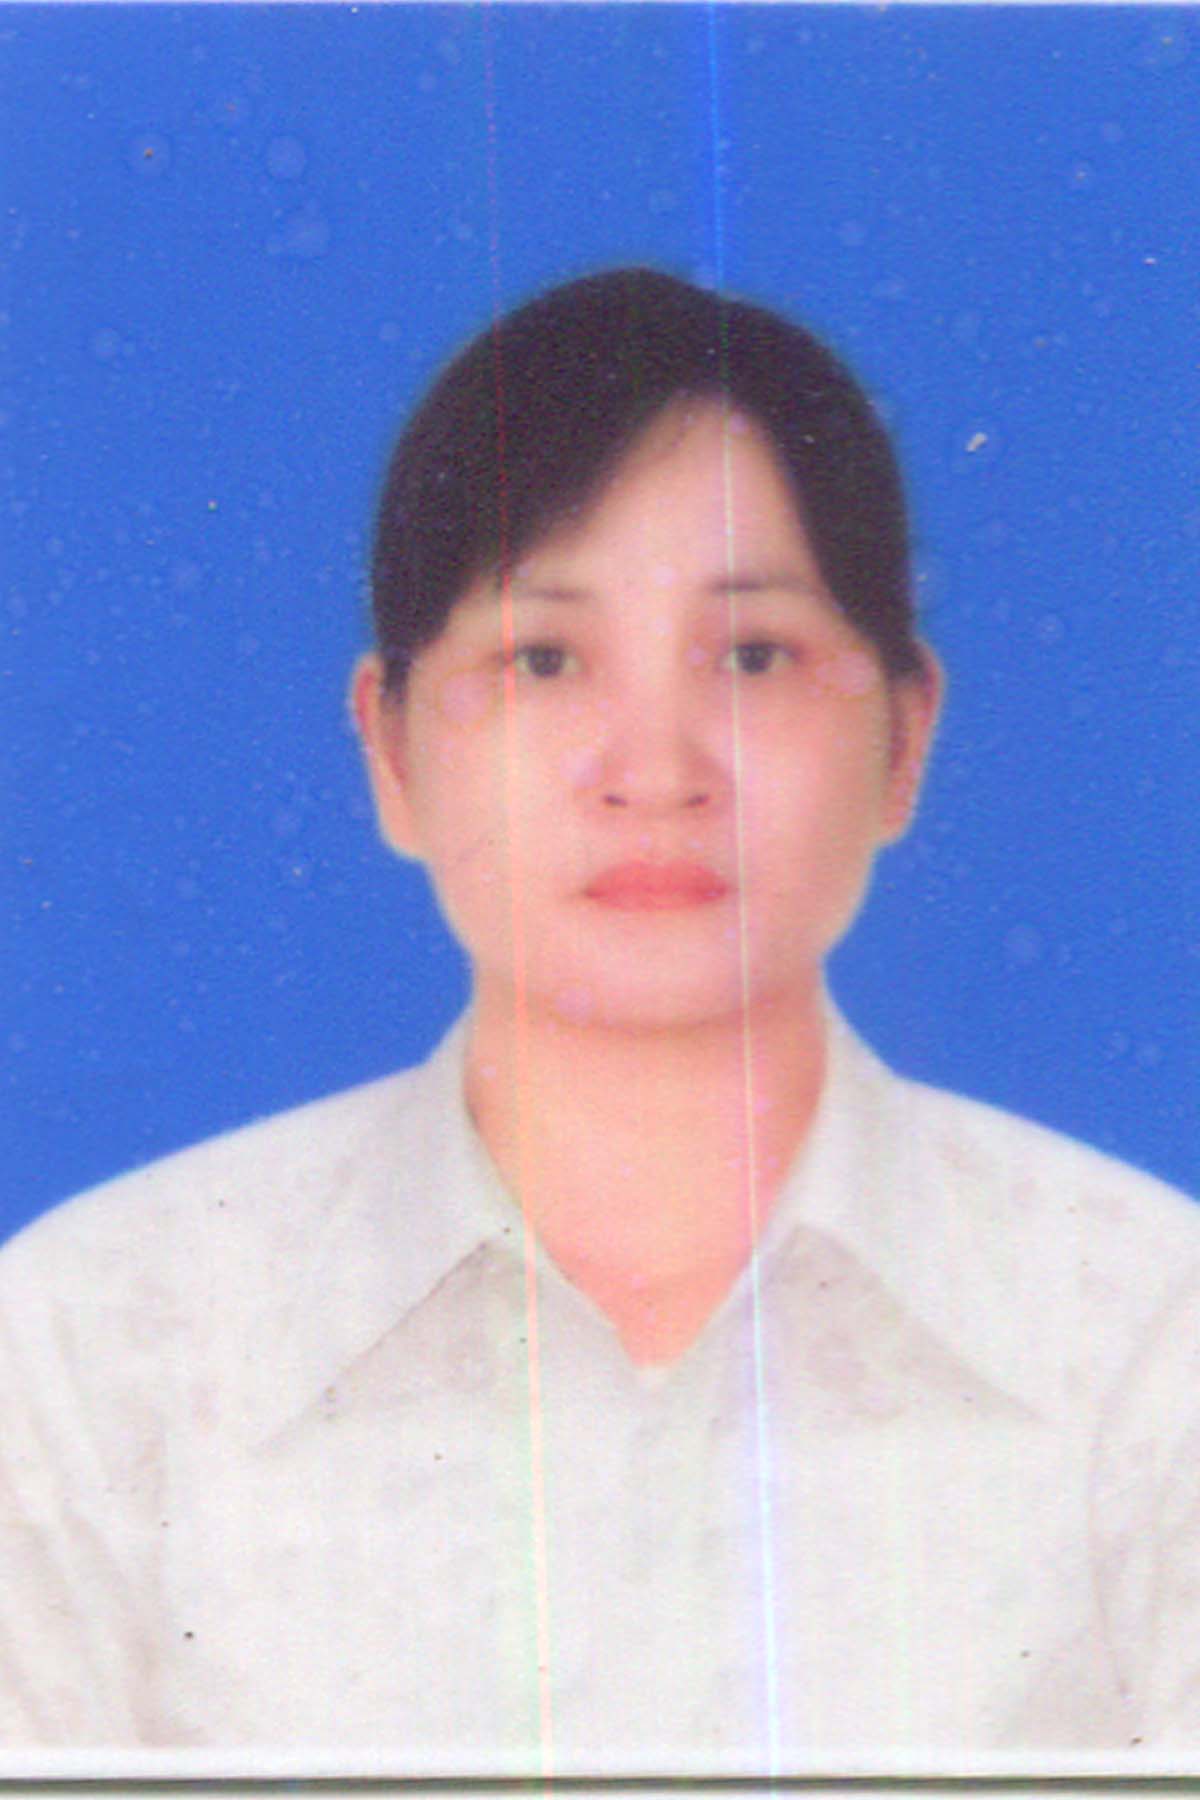 Nguyễn Thị Huệ